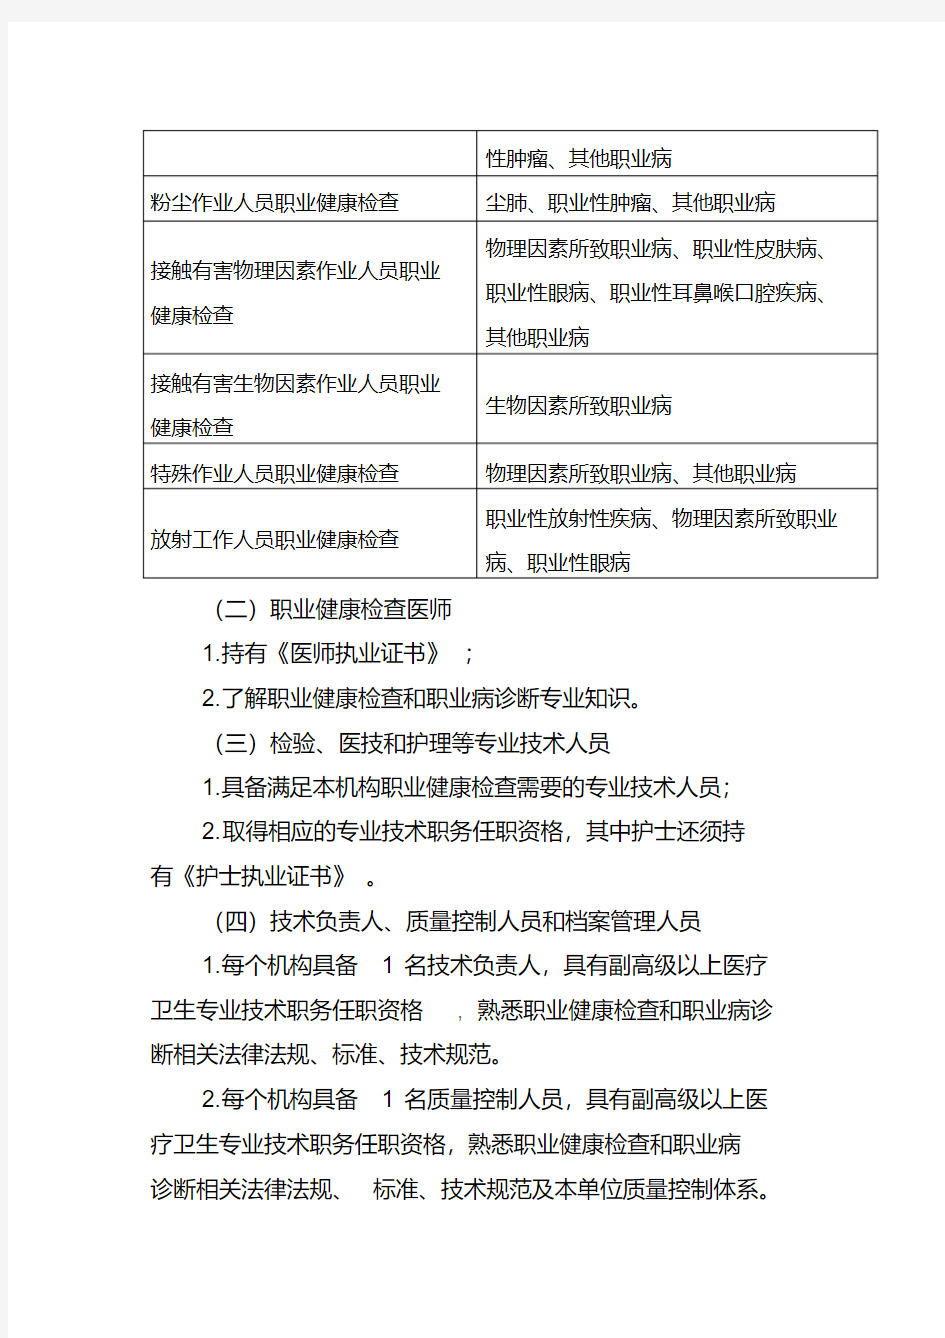 2020年上海市职业健康检查机构设置基本标准